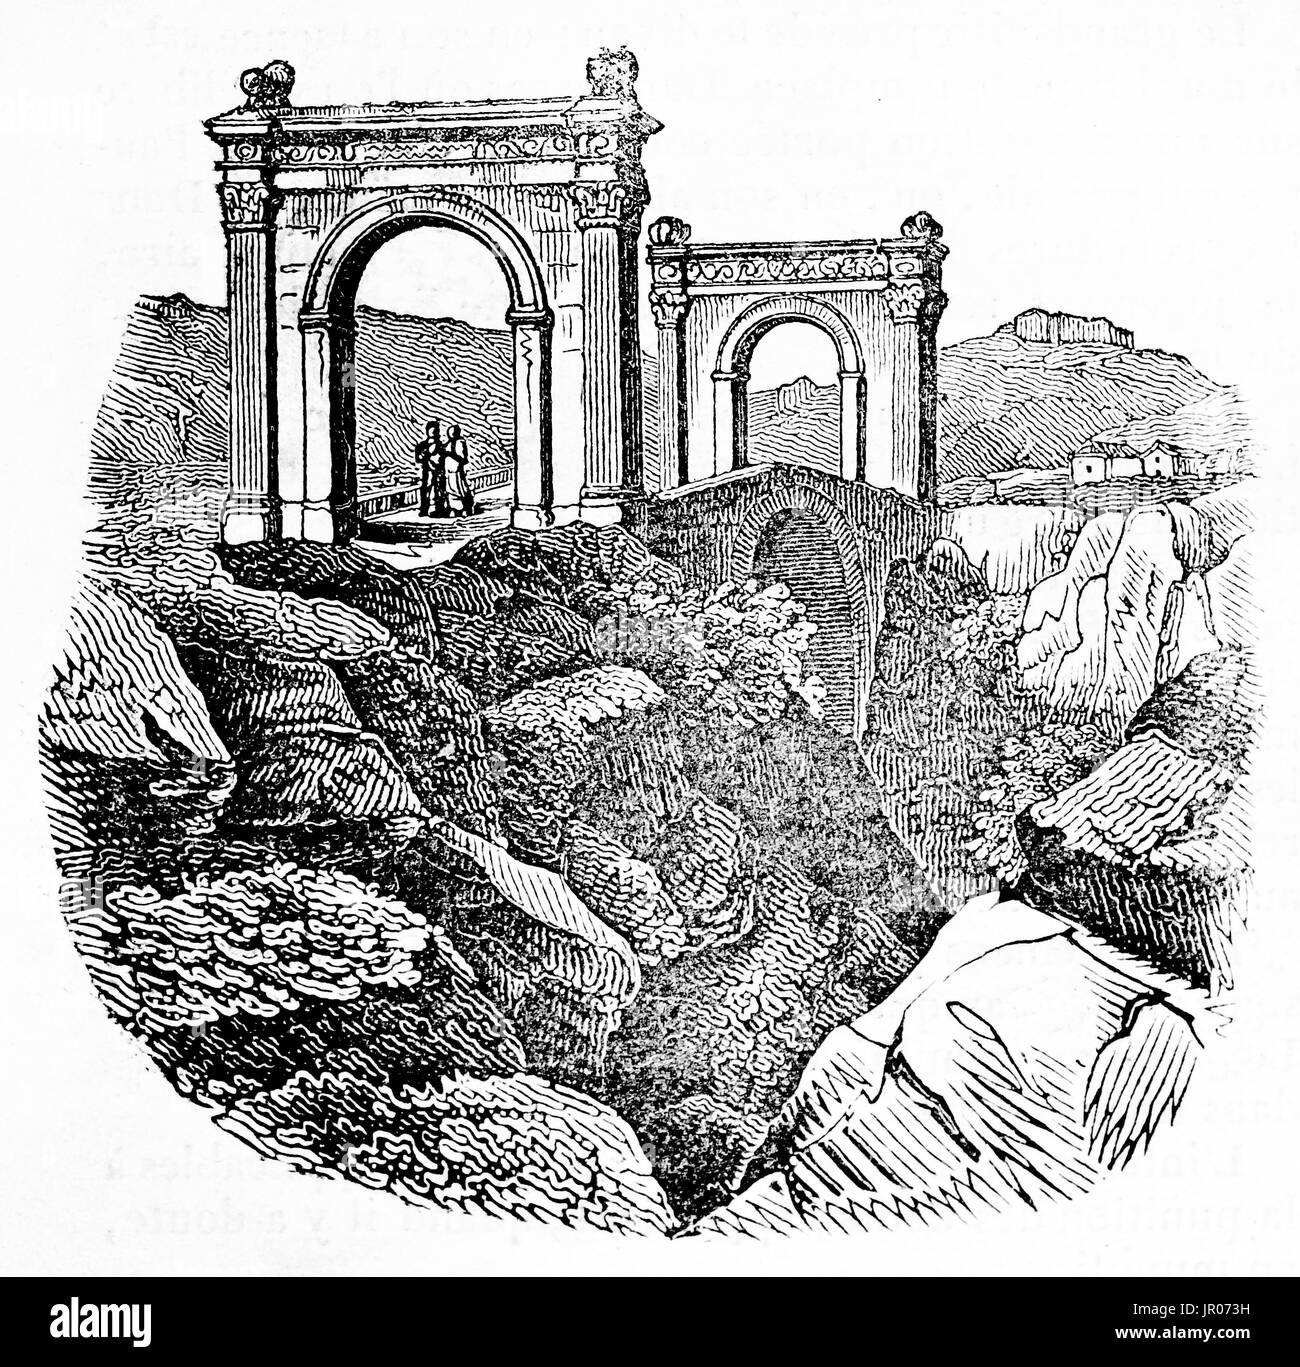 Alte Illuystration von der Pont Flavien (Flavian Brücke), Römerbrücke, Frankreich. Von unbekannter Autor veröffentlicht am Magasin Pittoresque, Paris, 1833. Stockfoto